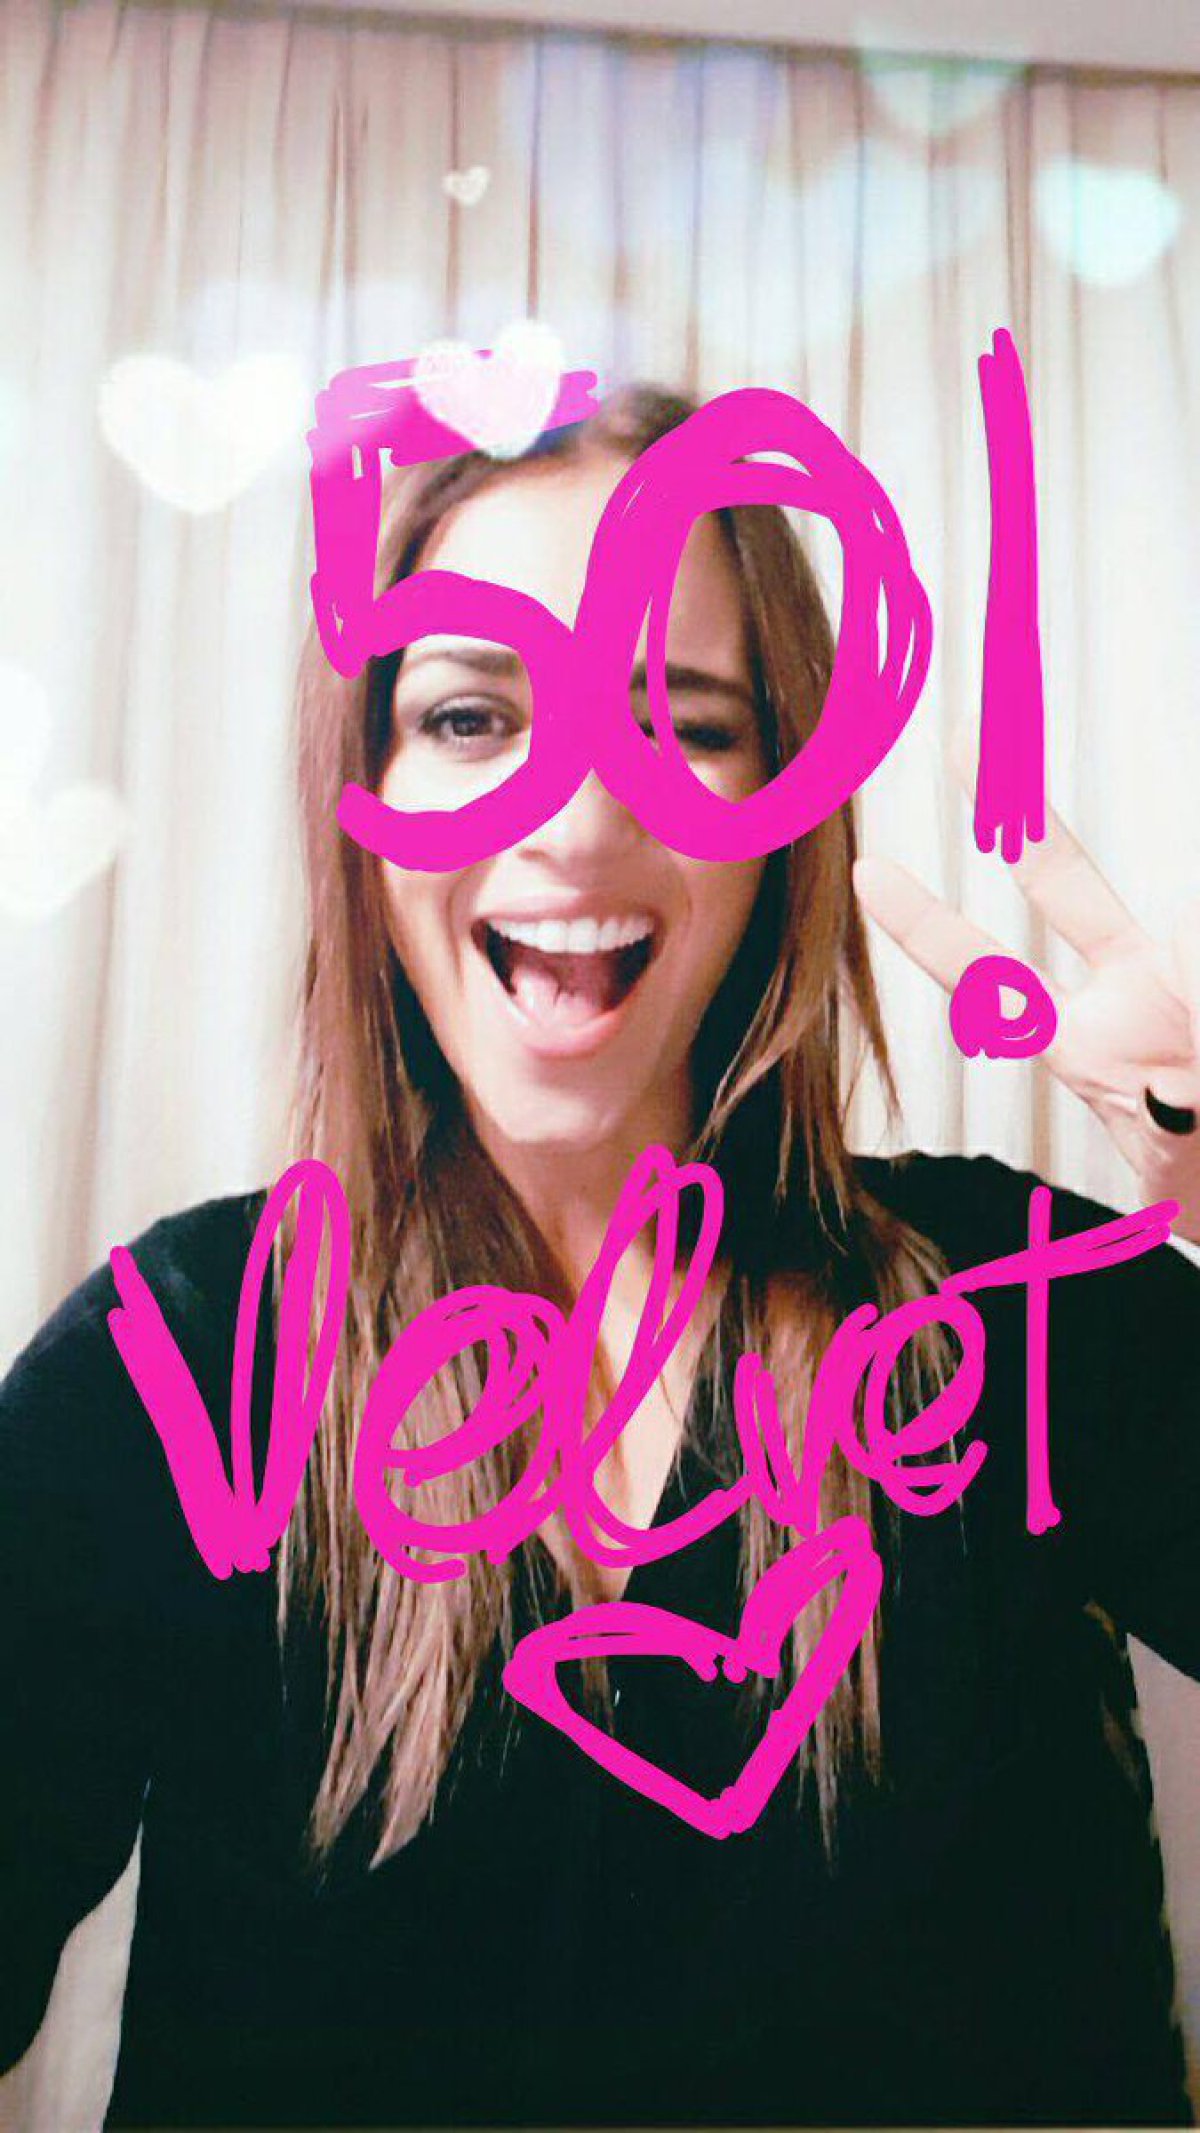 ‘Velvet’ se suma a la moda challenge con la celebración más viral